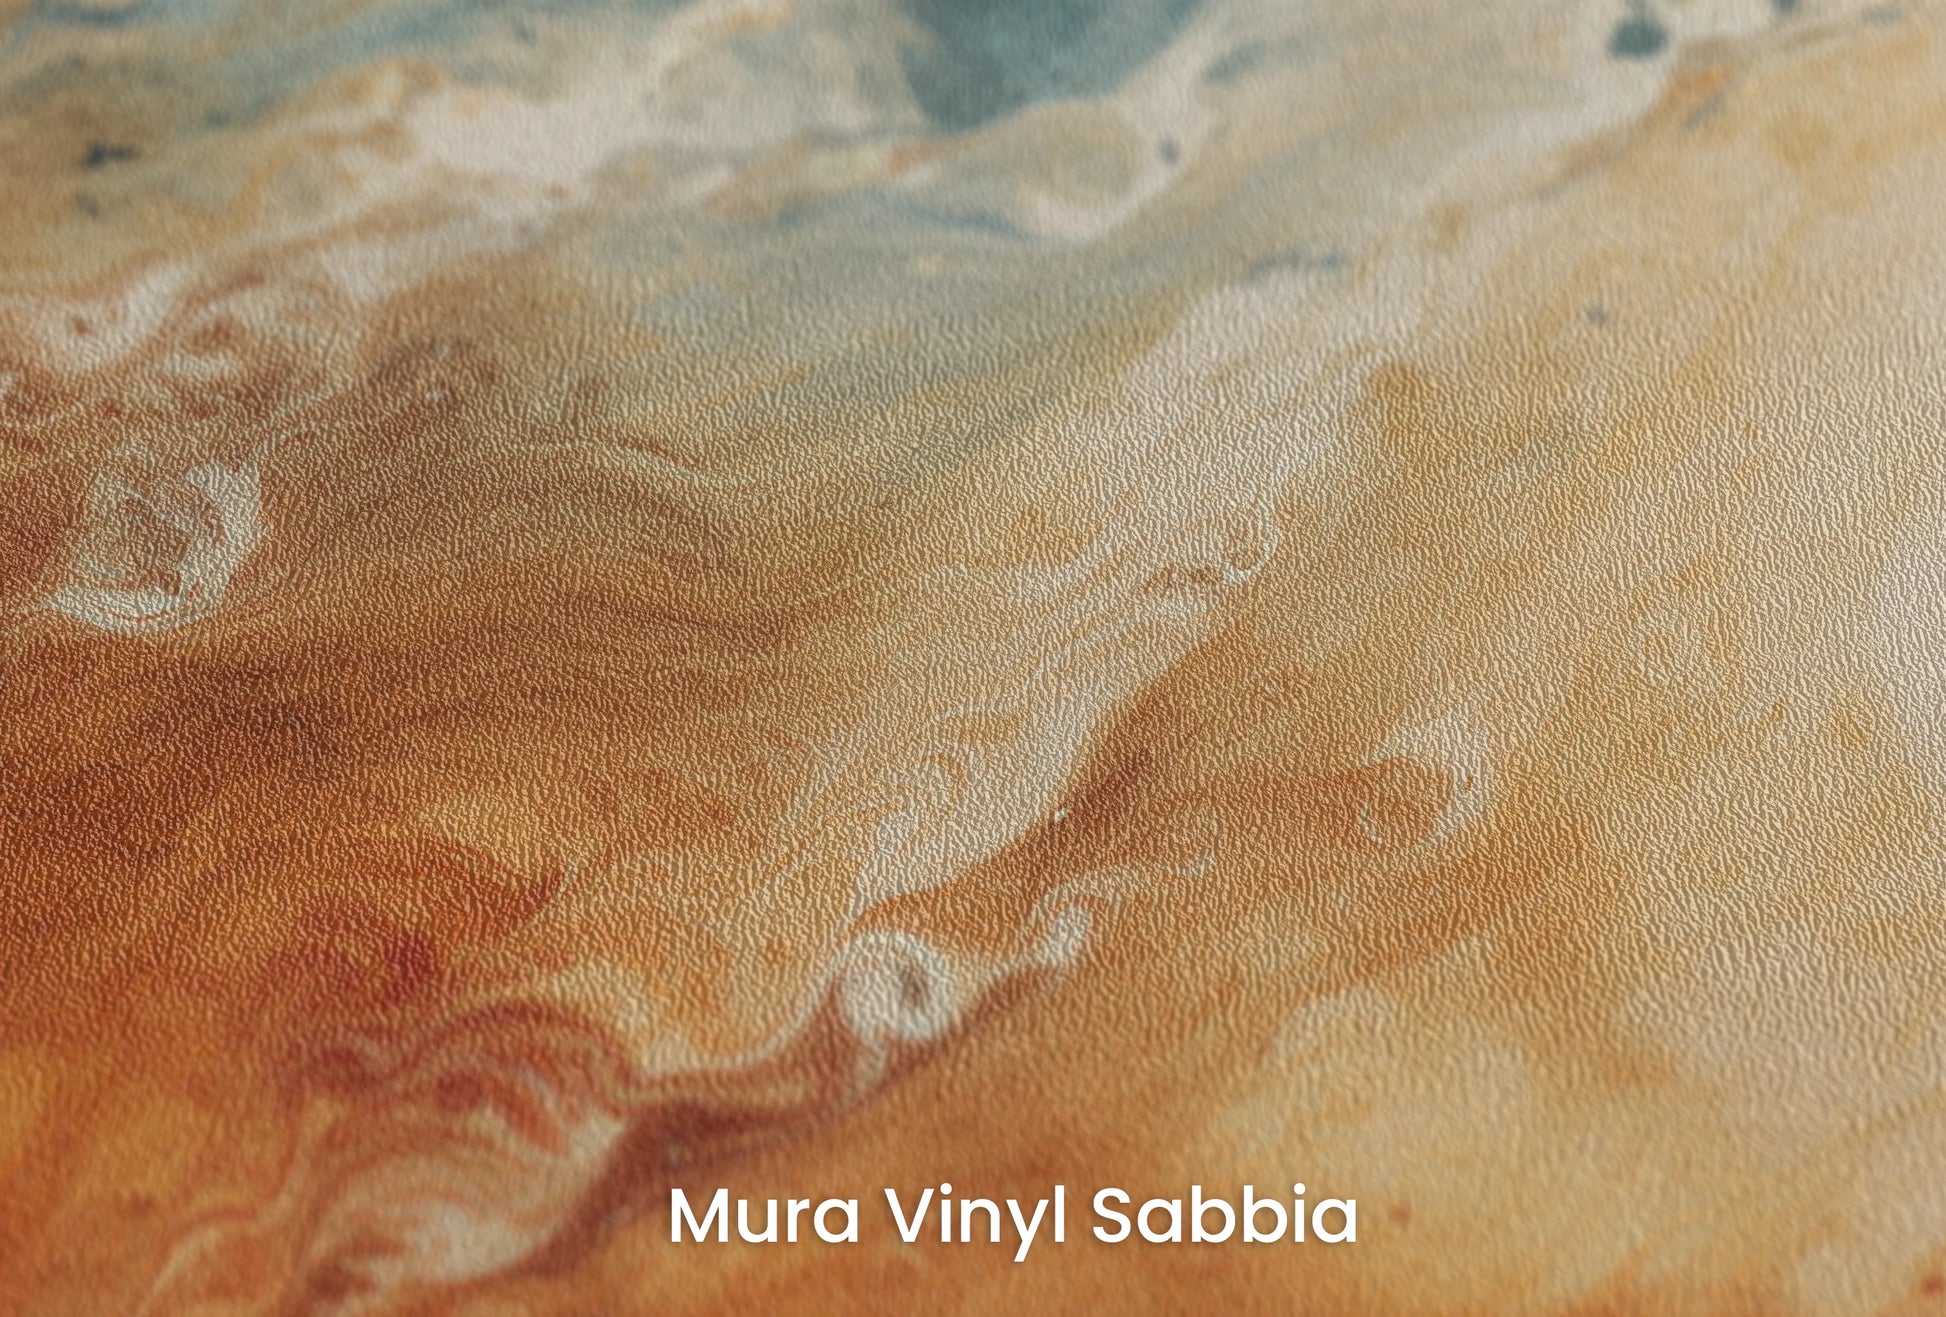 Zbliżenie na artystyczną fototapetę o nazwie Jovian Storm na podłożu Mura Vinyl Sabbia struktura grubego ziarna piasku.